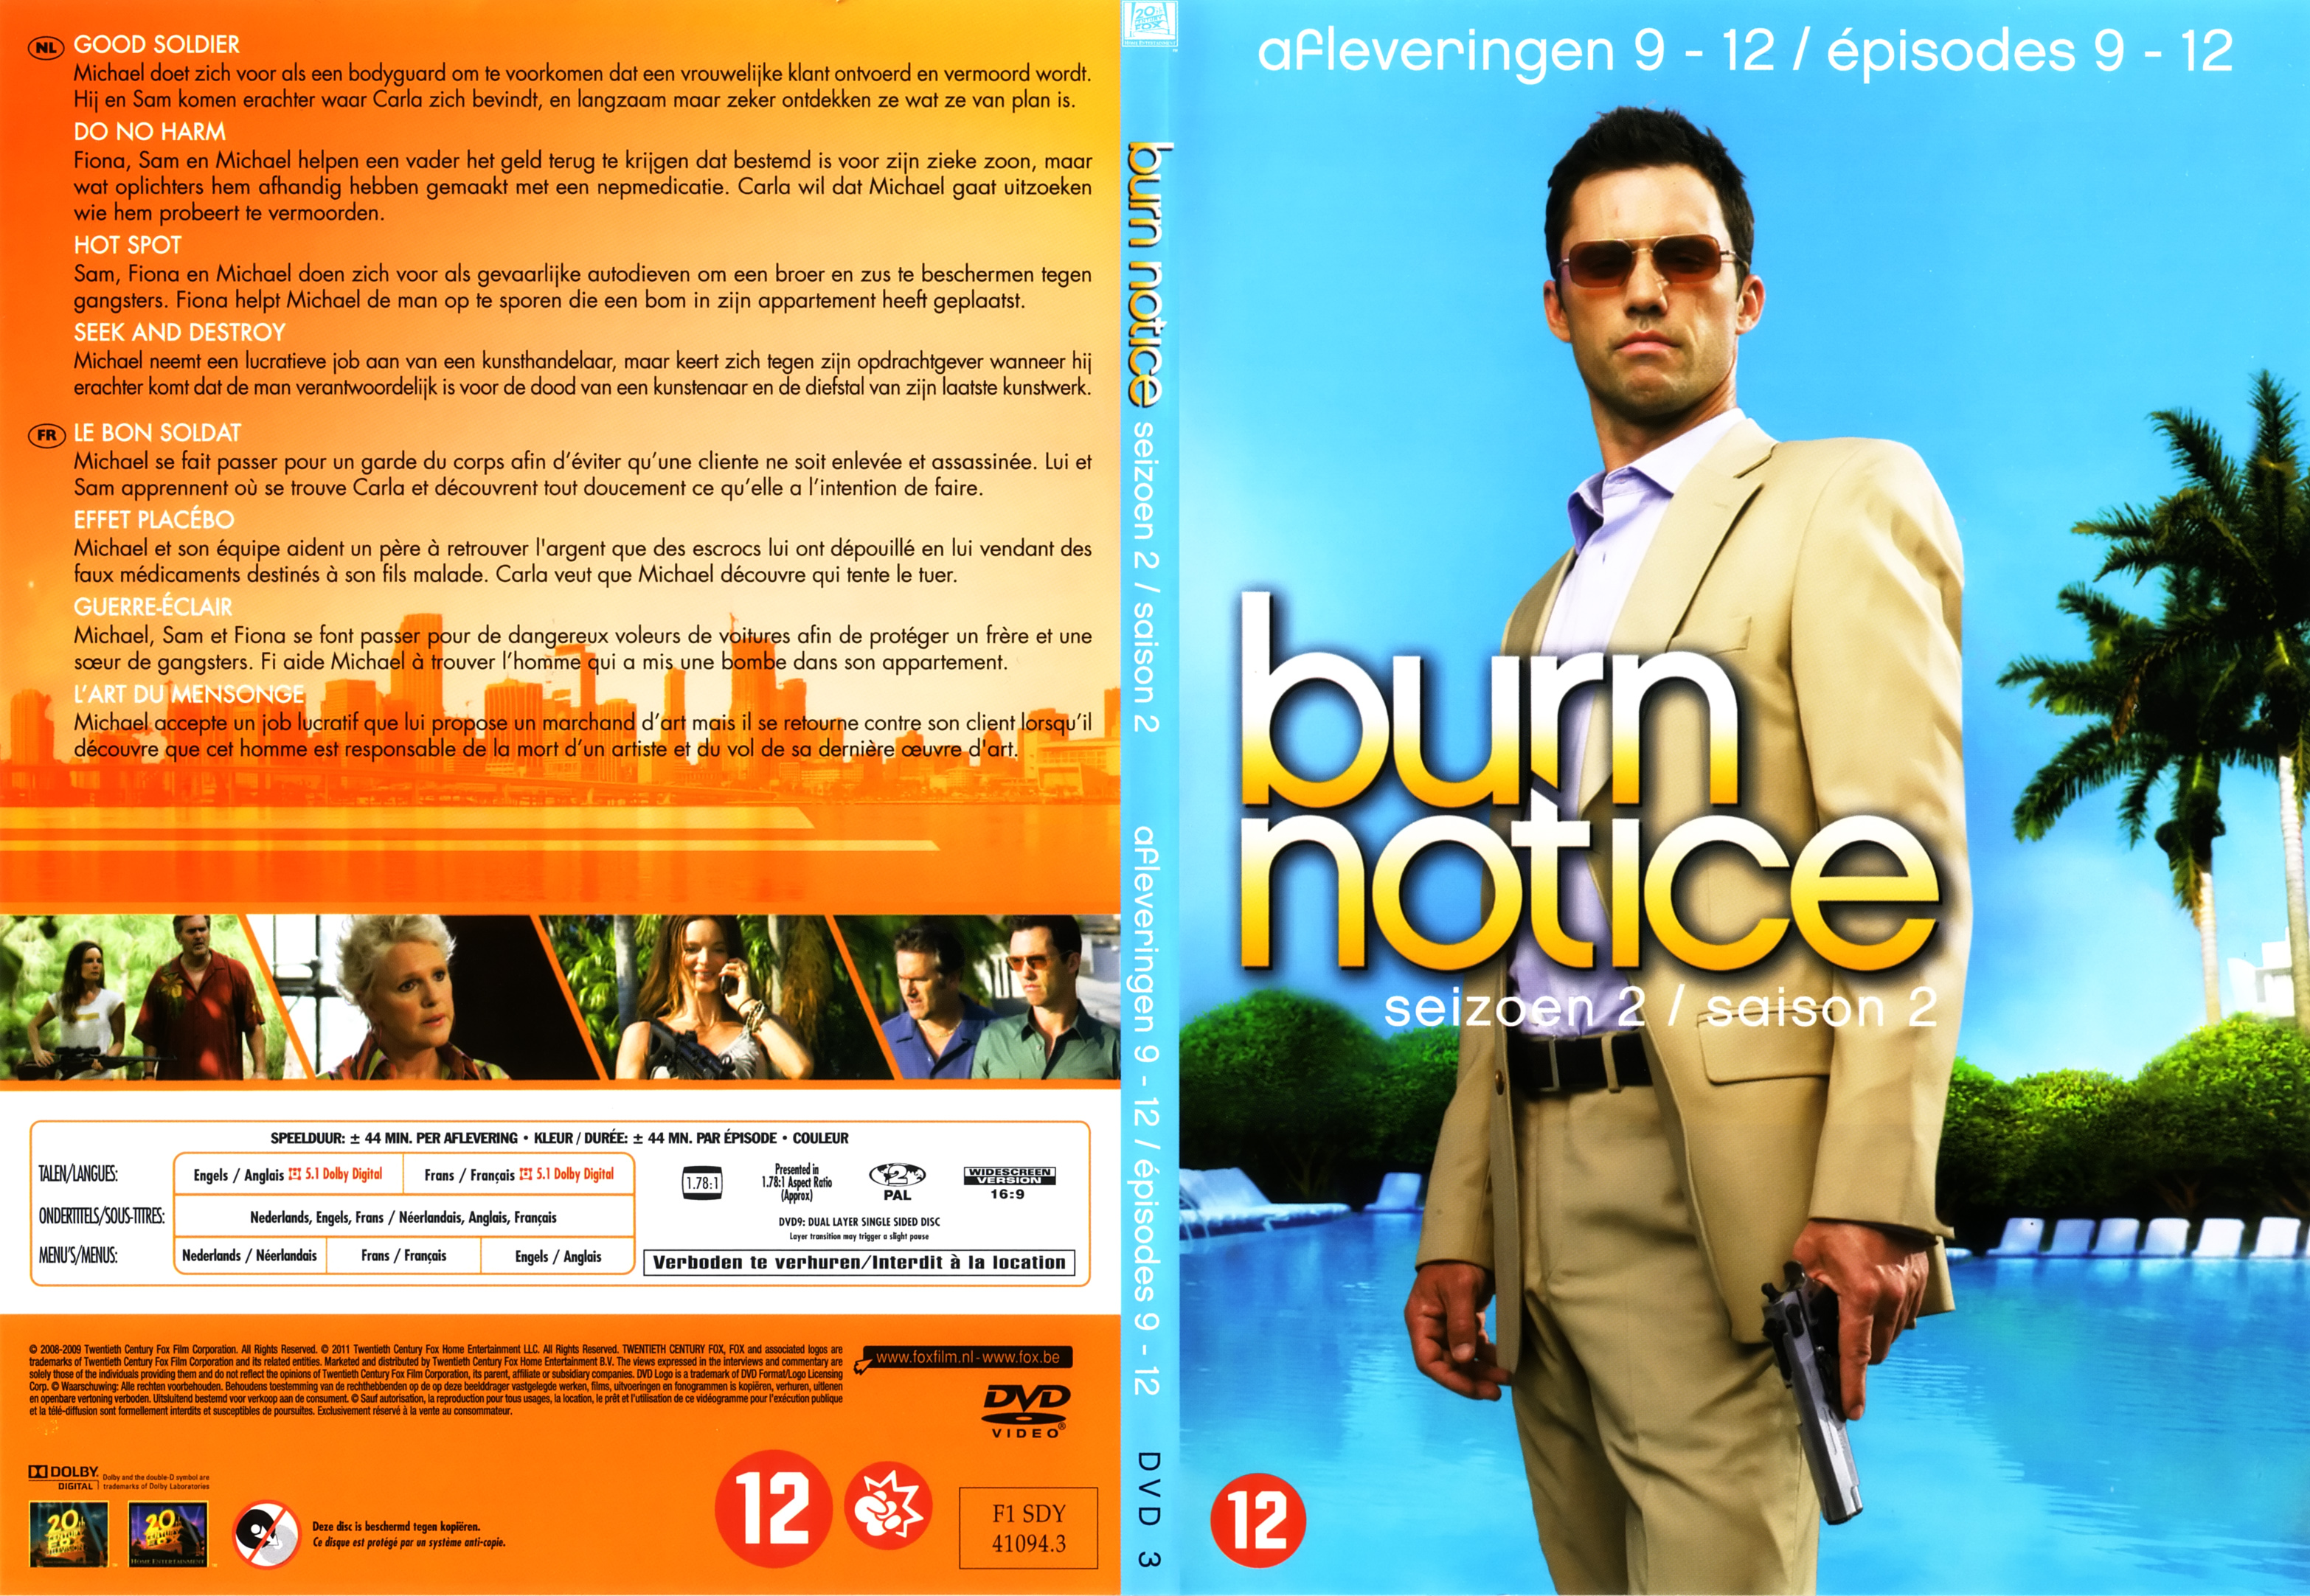 Jaquette DVD Burn notice Saison 2 DVD 3